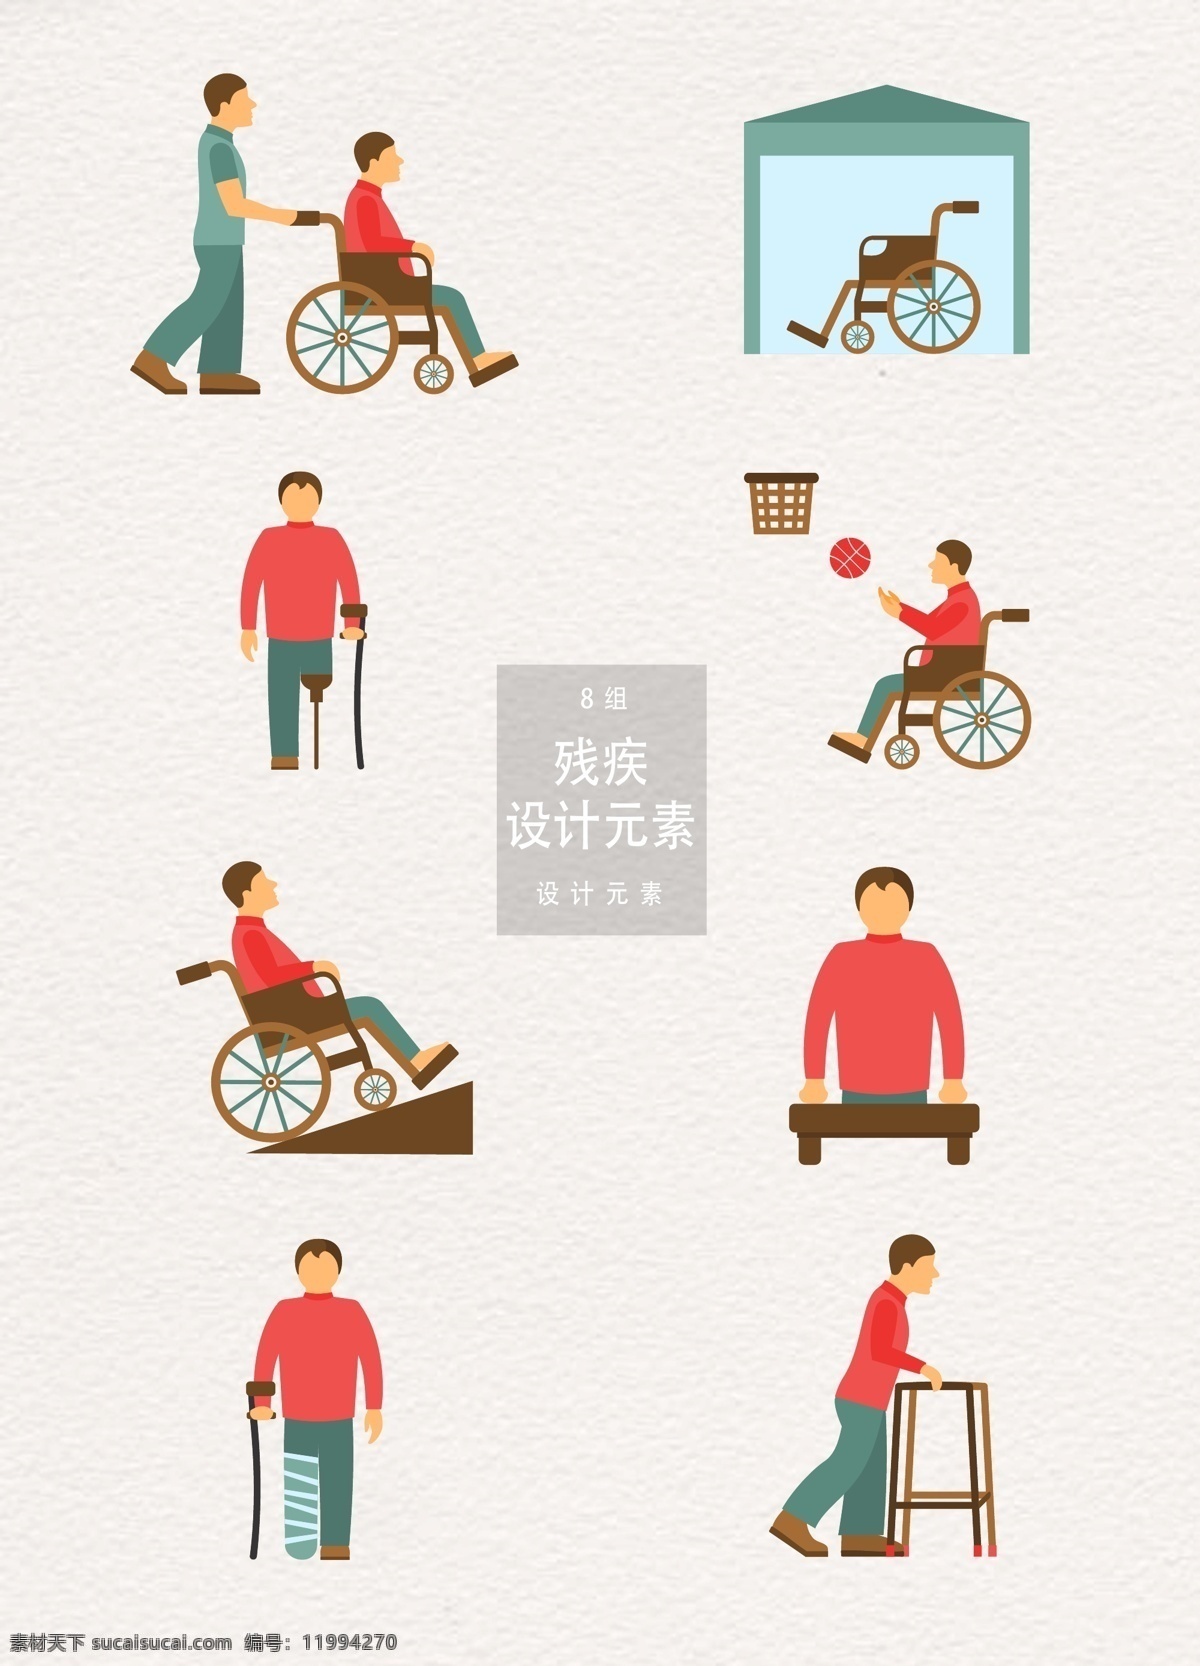 身体 残缺 残疾 矢量 元素 残疾人 设计元素 轮椅 篮球 医疗 残疾人士 身体残缺